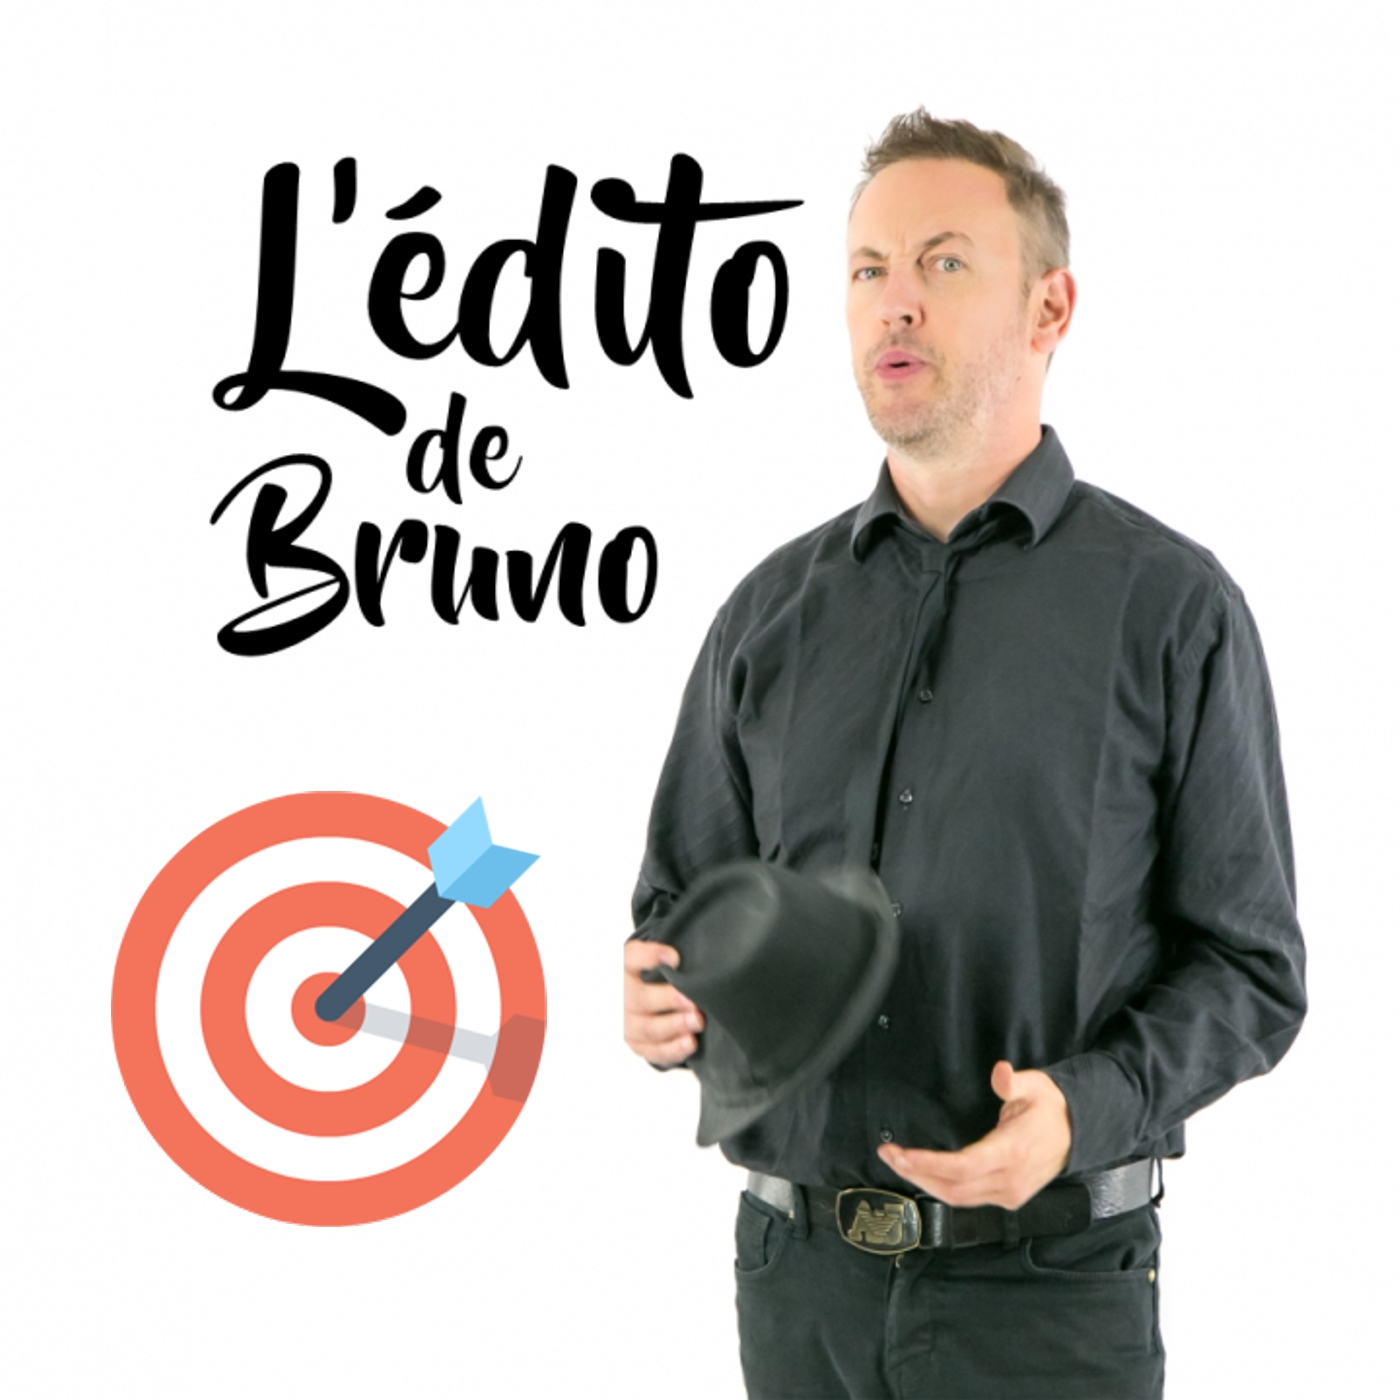 L'édito de Bruno du 06 04 2021 L'édito de Bruno de l'émission Tendance à m'plaire sur Radio G! L'édito de Bruno du 06 04 2021